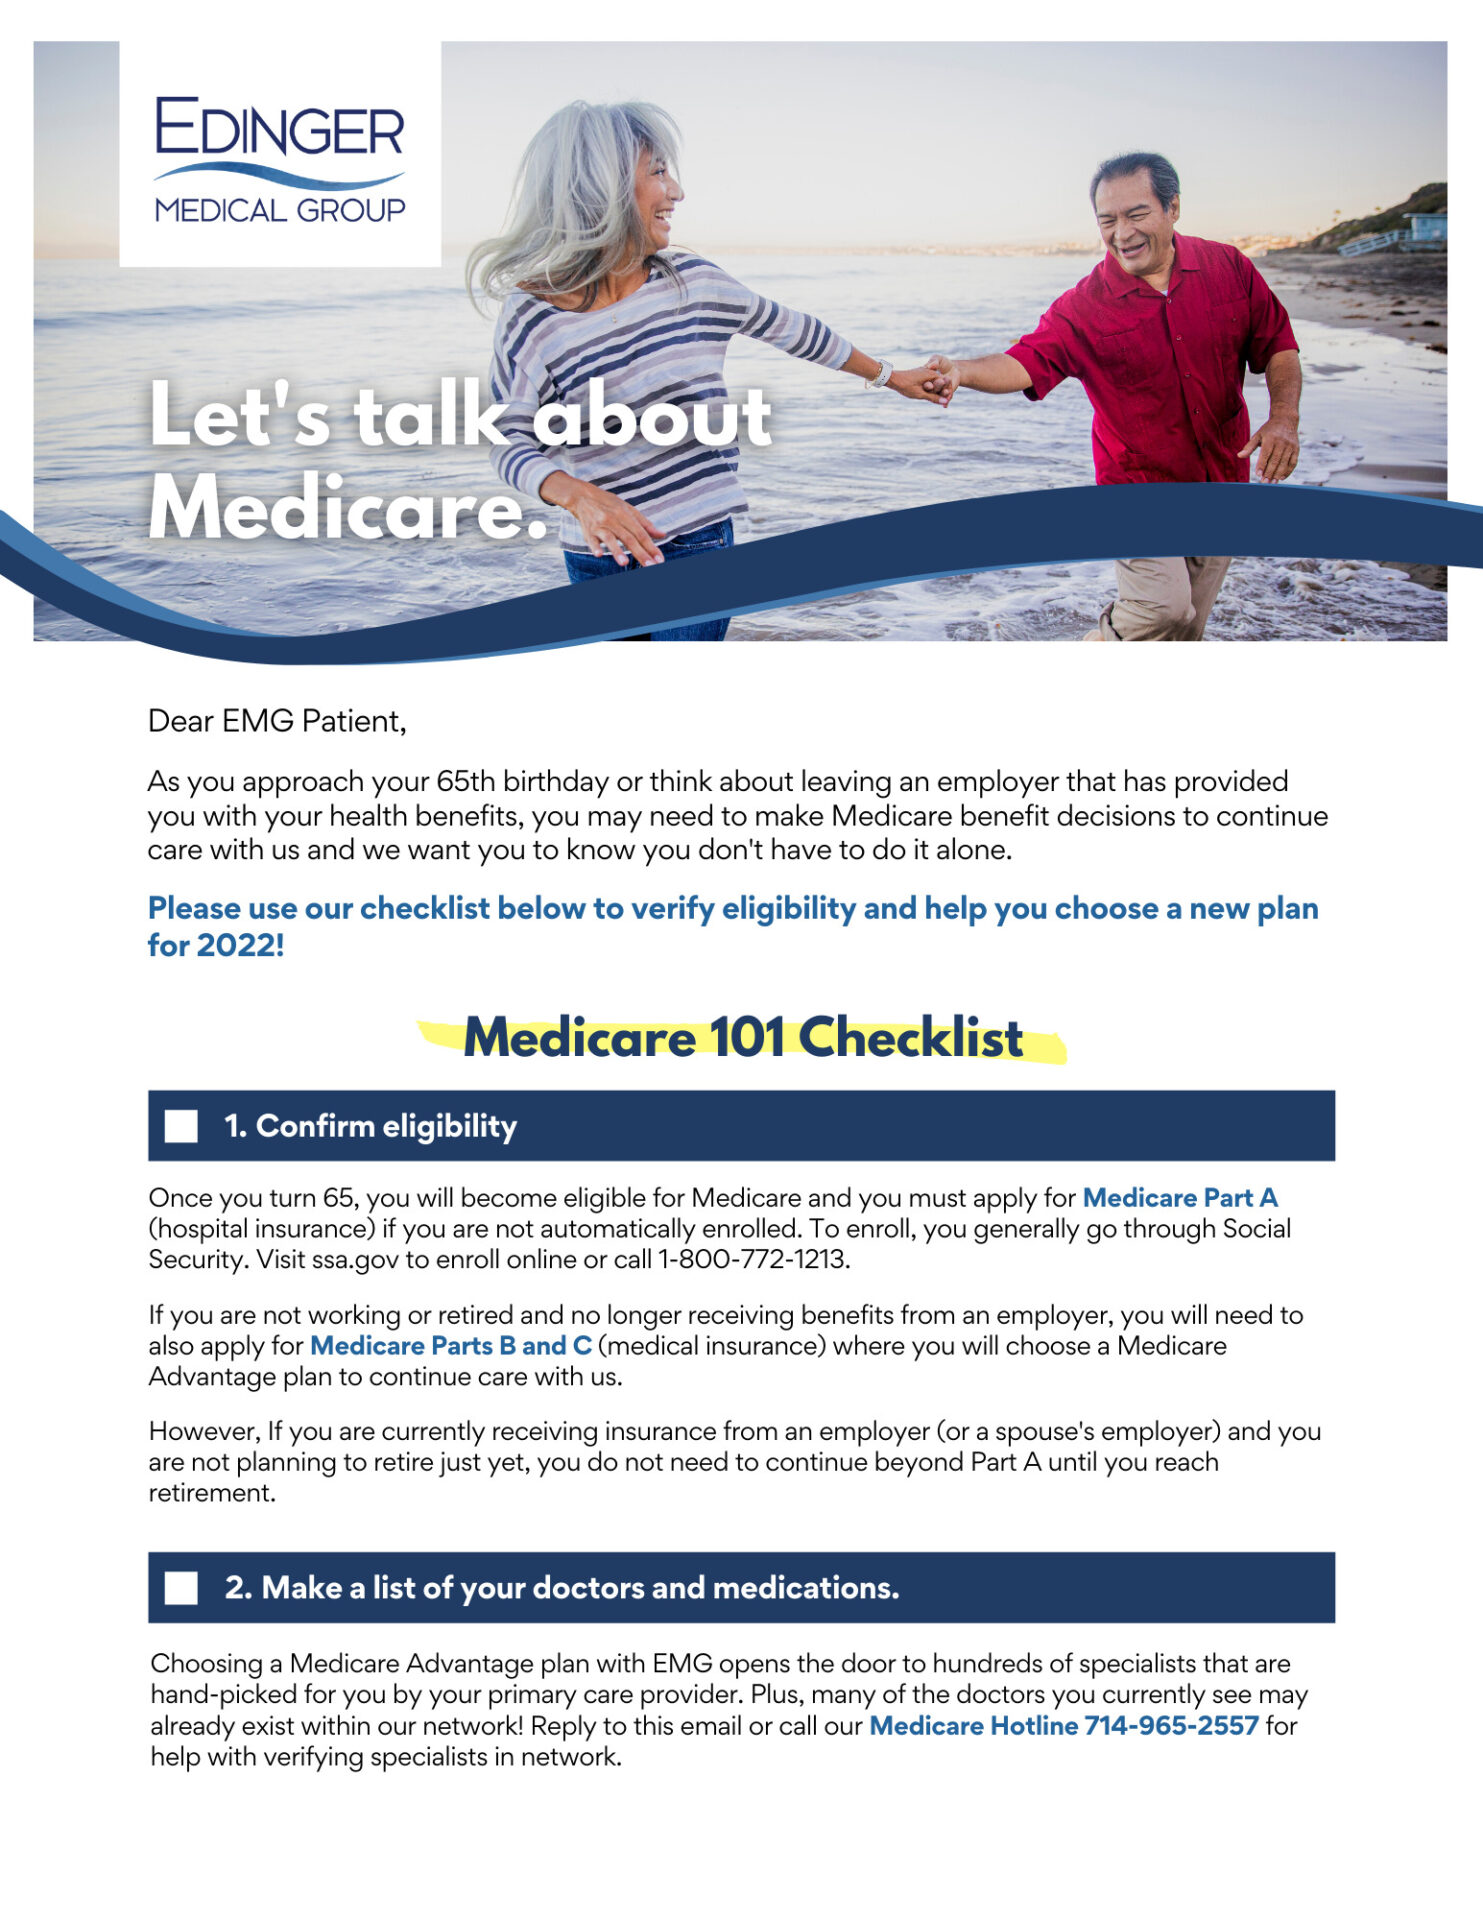 Medicare checklist 1